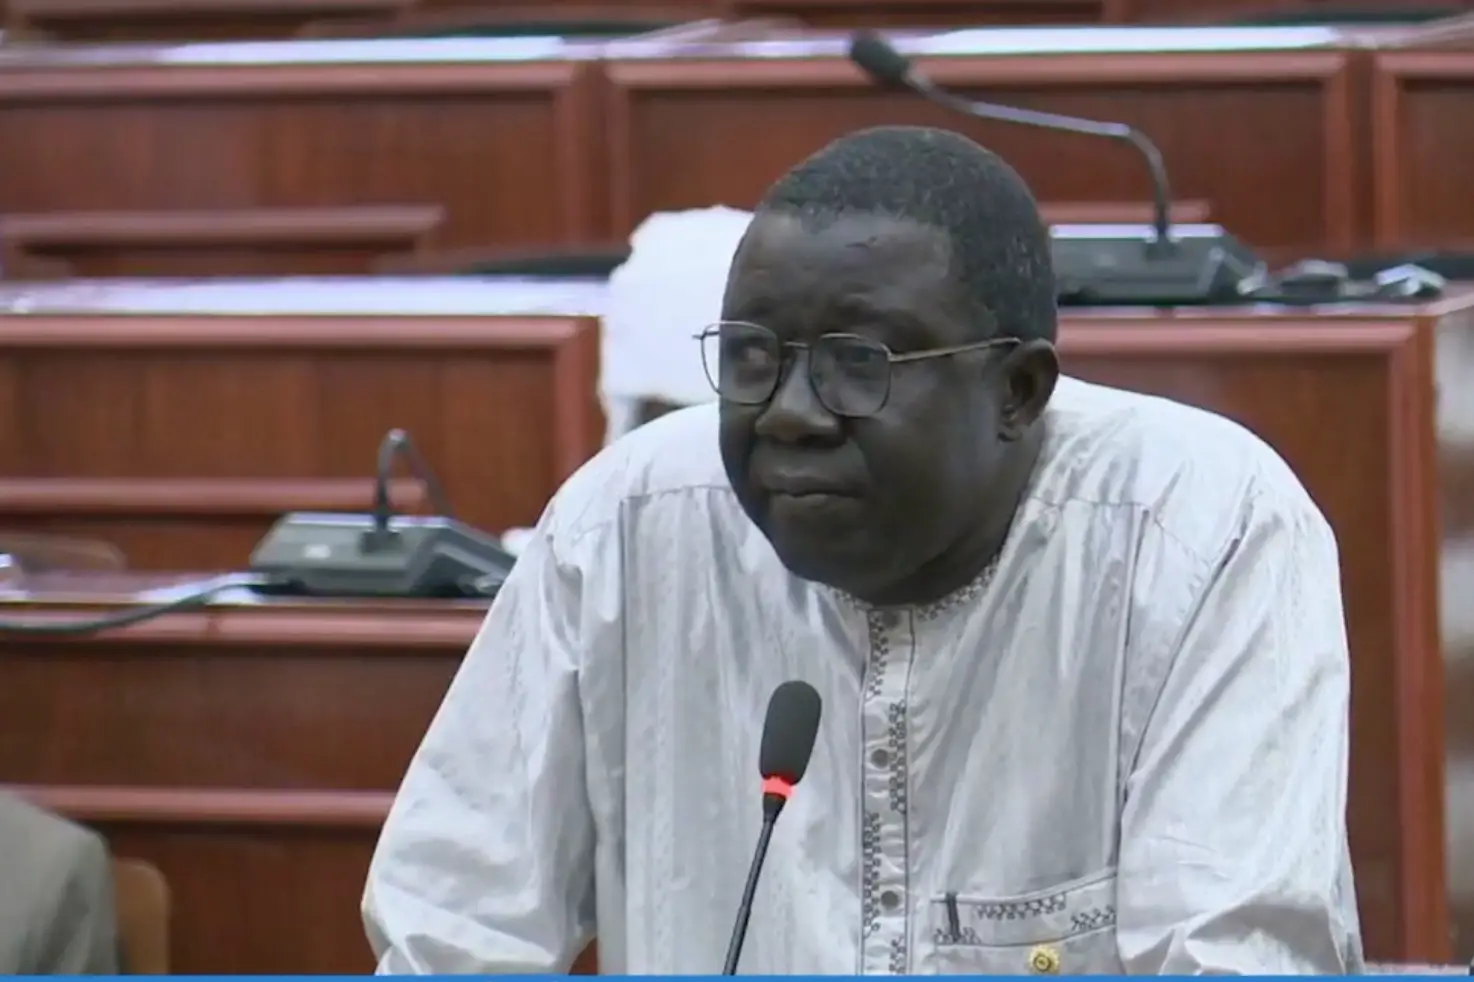 Tchad : "chacun doit se mettre au travail, éviter la lourdeur administrative", Alladoum Djarma Balthazar